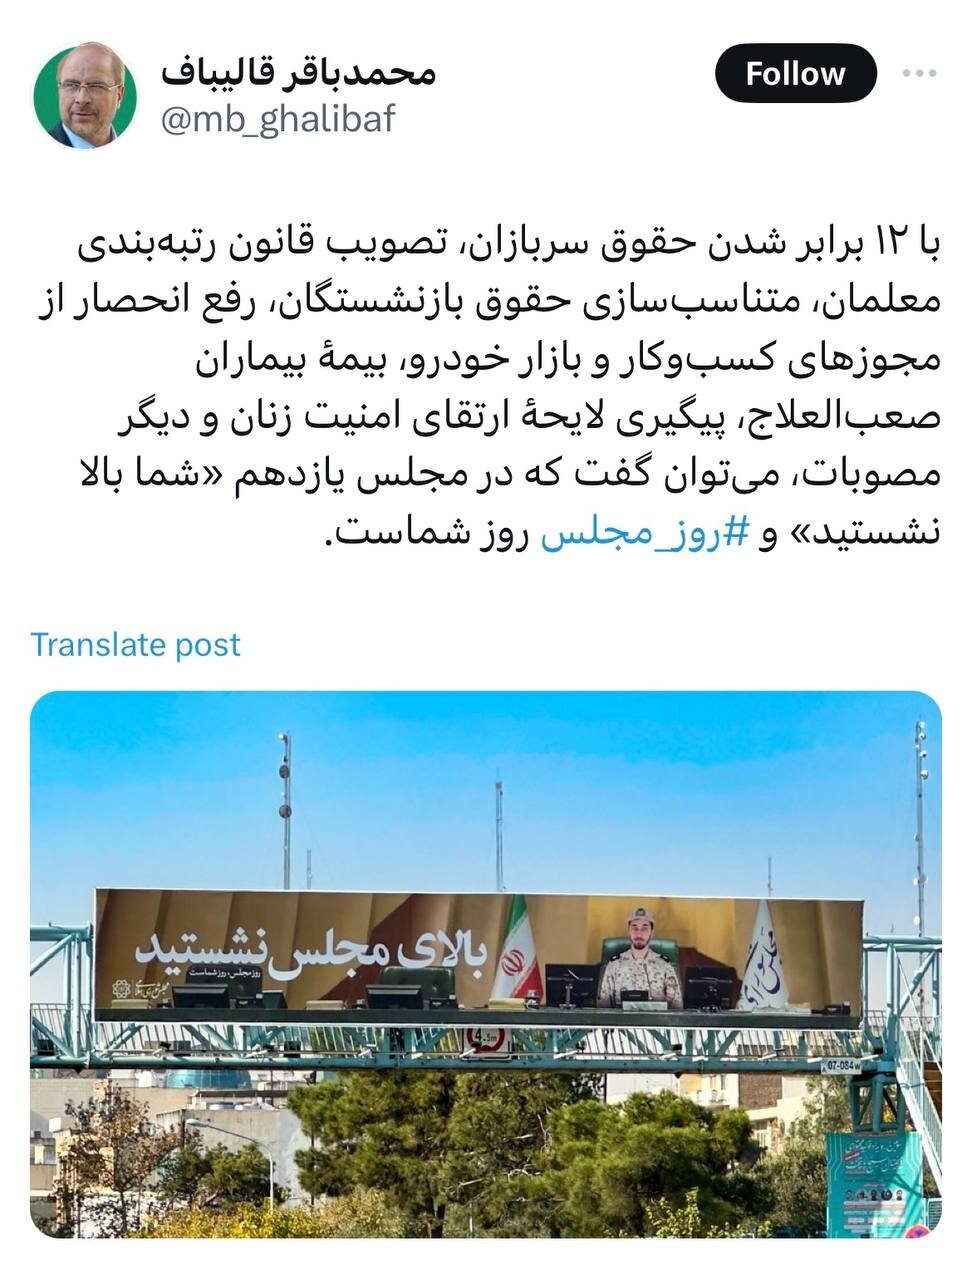 واکنش قالیباف به بیلبوردهای شهرداری تهران و تعریف از مجلس +عکس